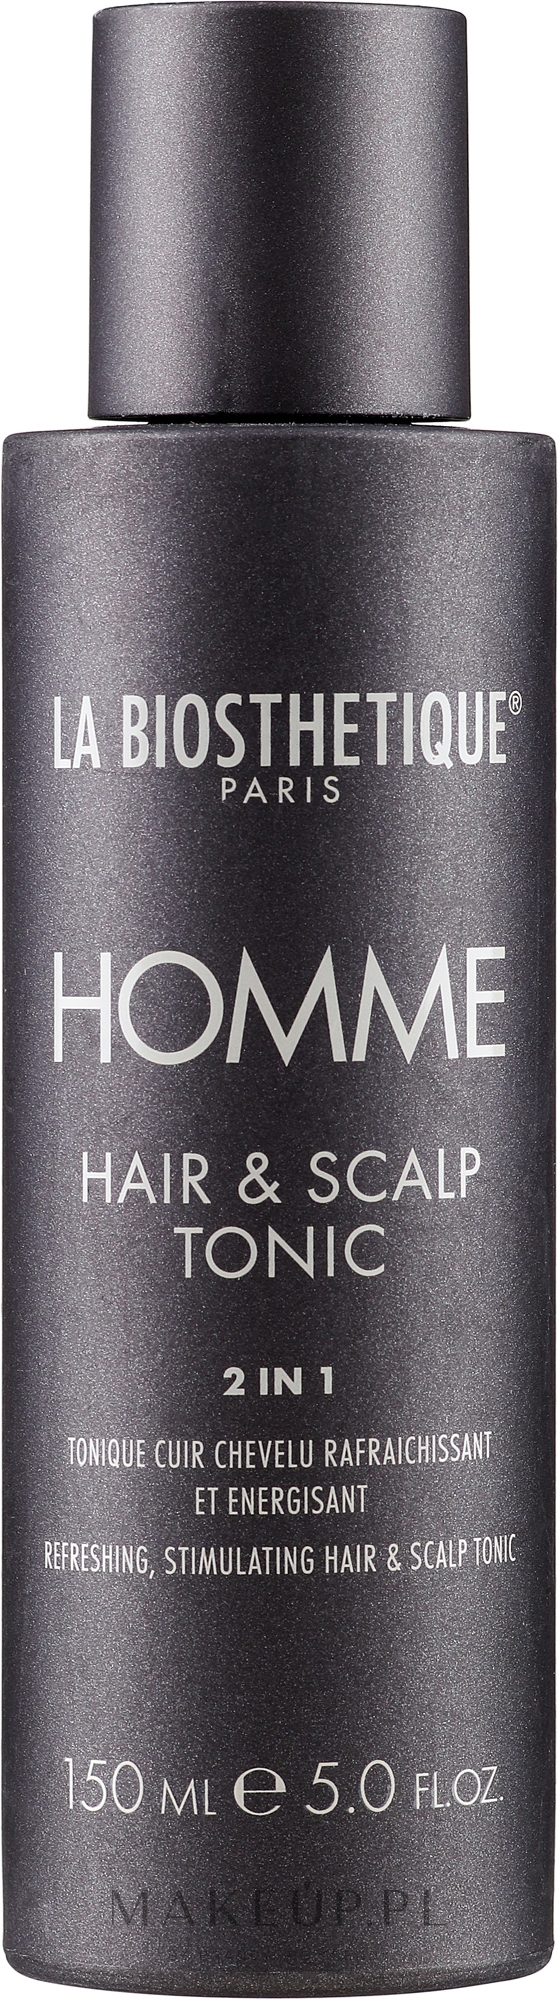 Odświeżający tonik do skóry głowy stymulujący wzrost włosów - La Biosthetique Homme Hair & Scalp Tonic  — Zdjęcie 150 ml